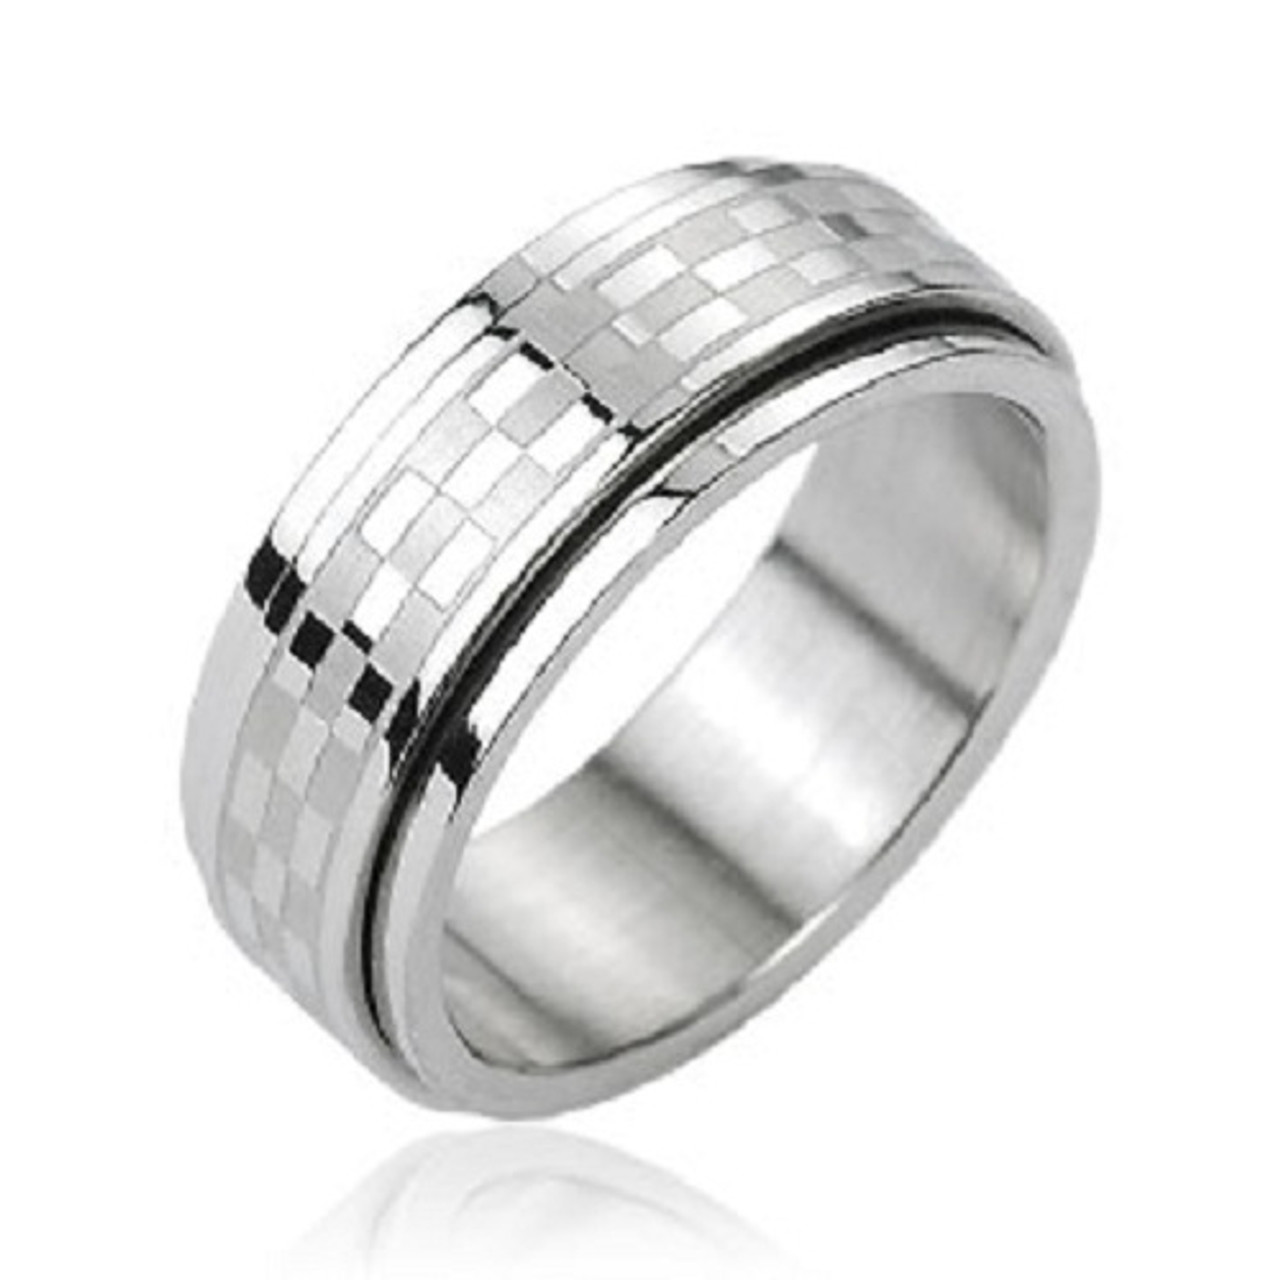 Checkered Center Stainless Steel Spinner Ring - ForeverGifts.com